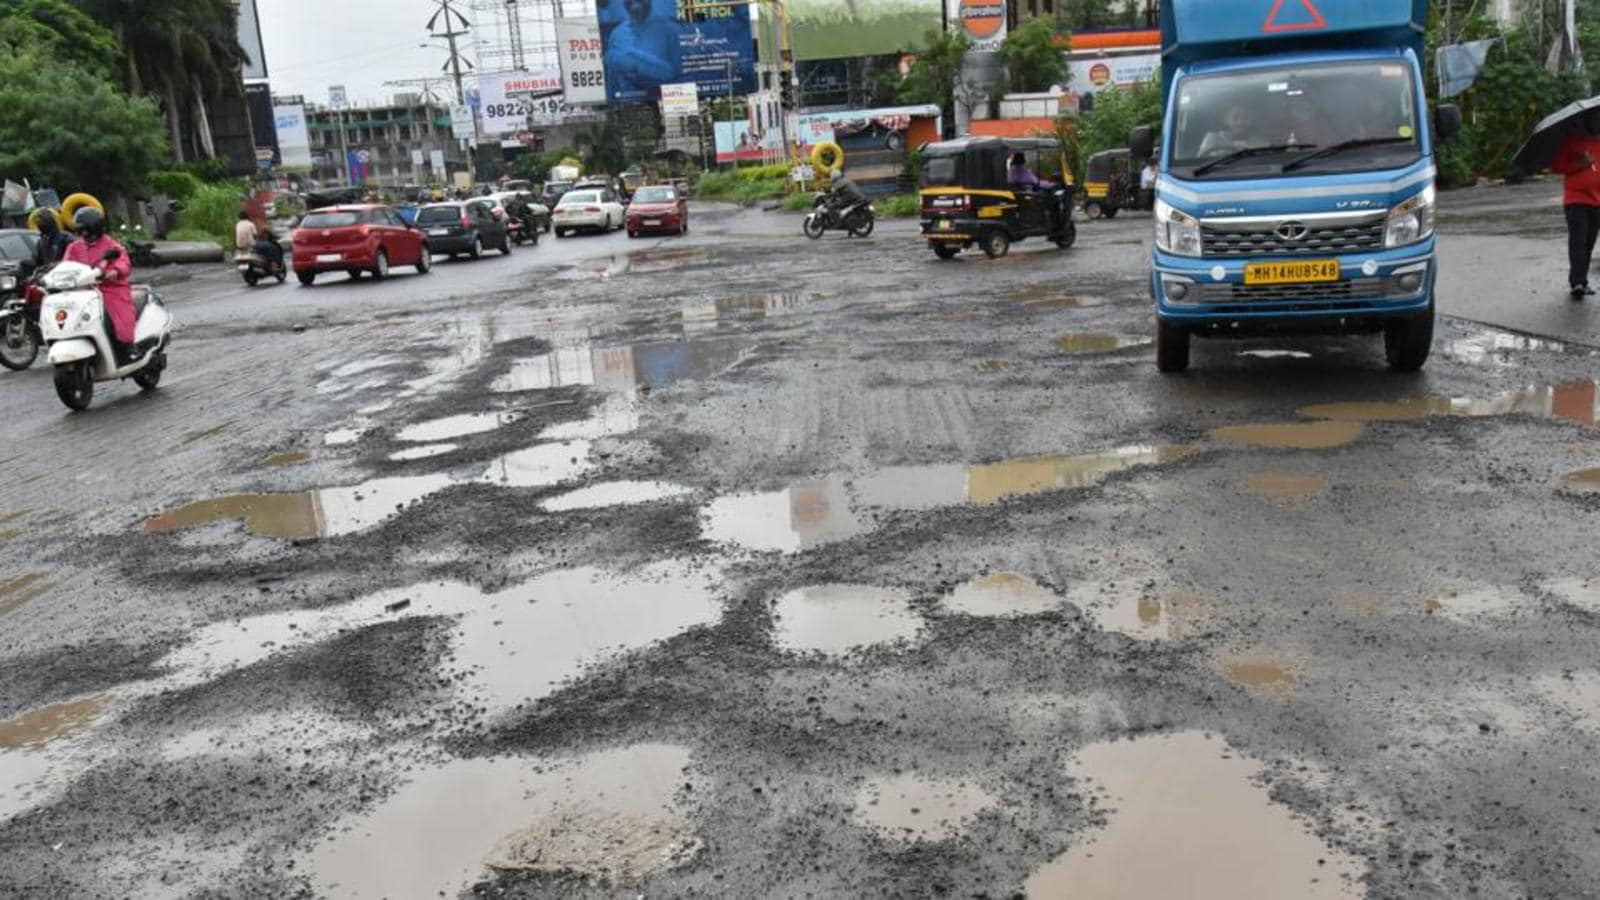 Potholes in pune | महापालिकेकडून गेल्या आठवड्याभरात फक्त १०० खड्ड्यांची डागडुजी 